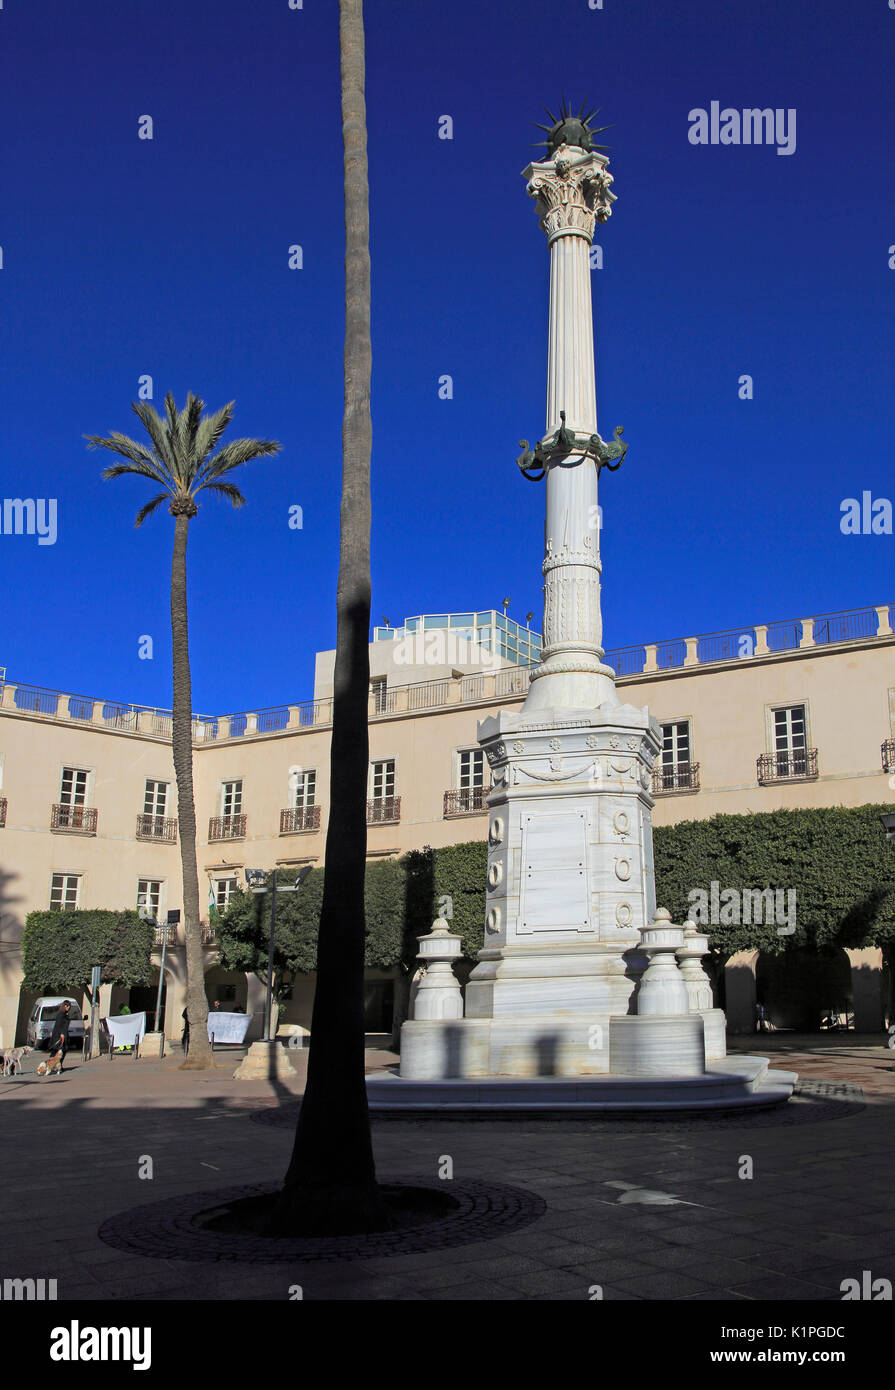 Monument memorial in Plaza Vieja, Plaza de la Constitucion, City of Almeria, Spain Stock Photo